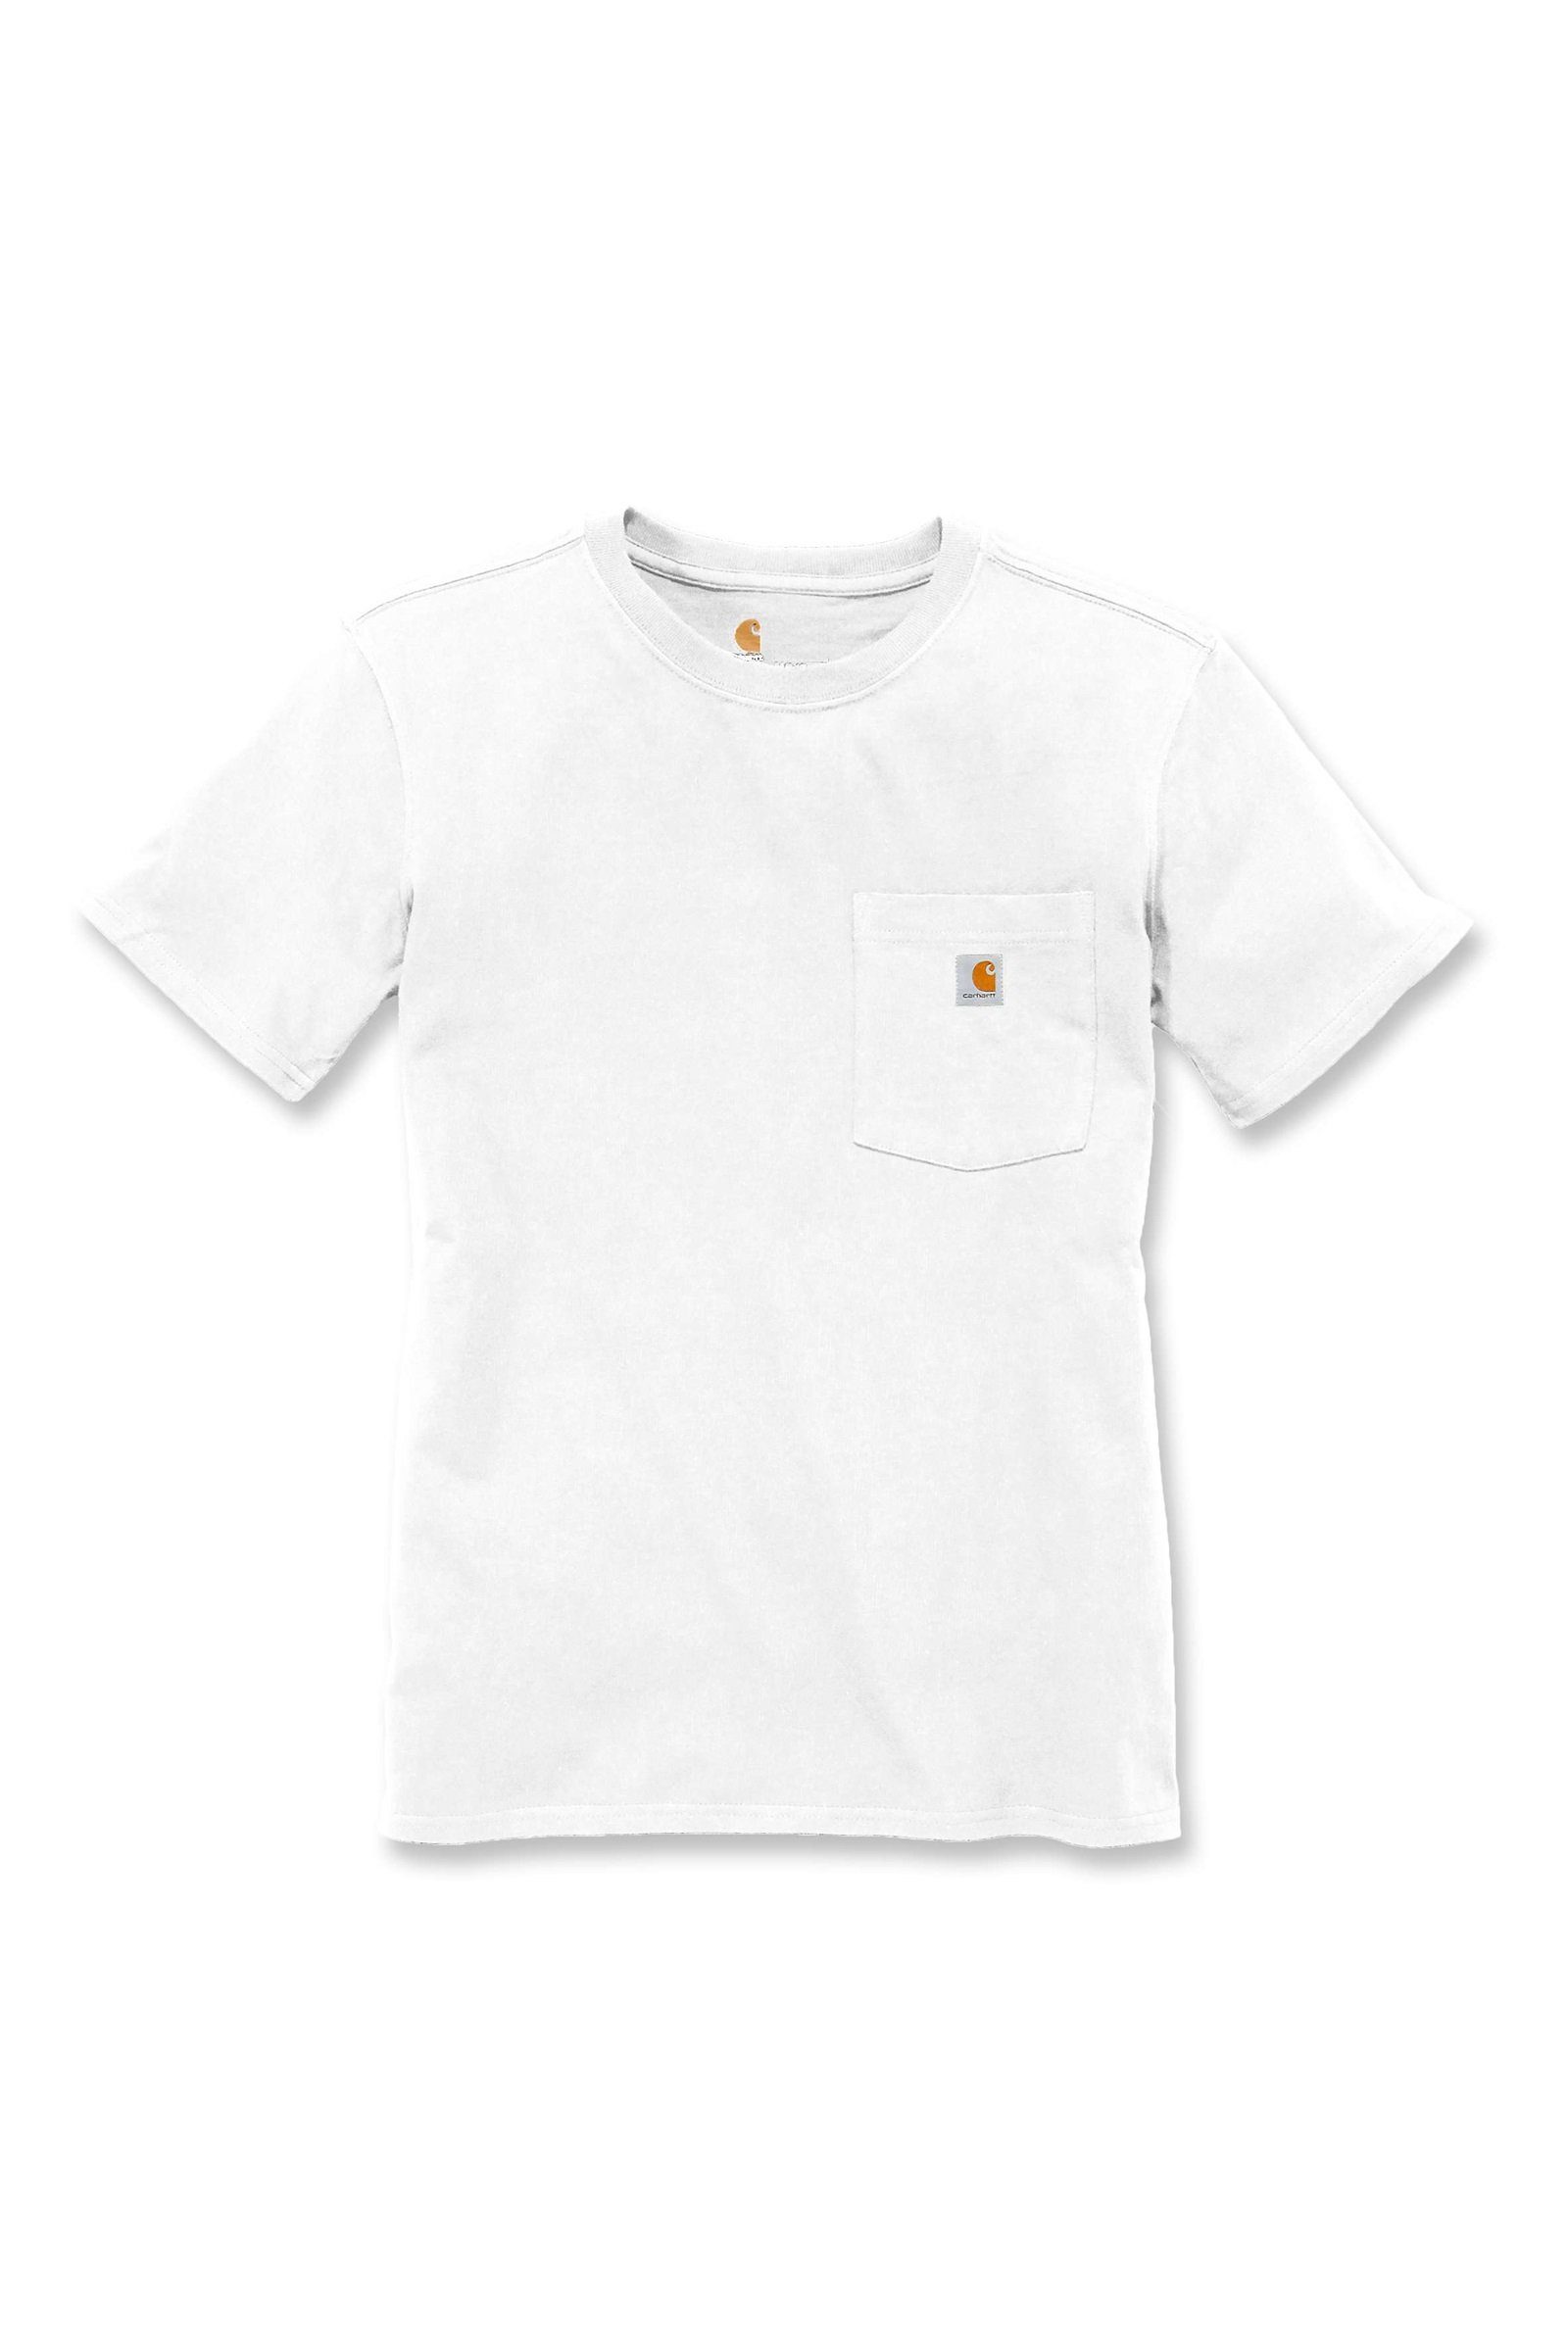 white Carhartt Pocket T-Shirt Adult Carhartt Heavyweight T-Shirt Short-Sleeve Damen Loose Fit